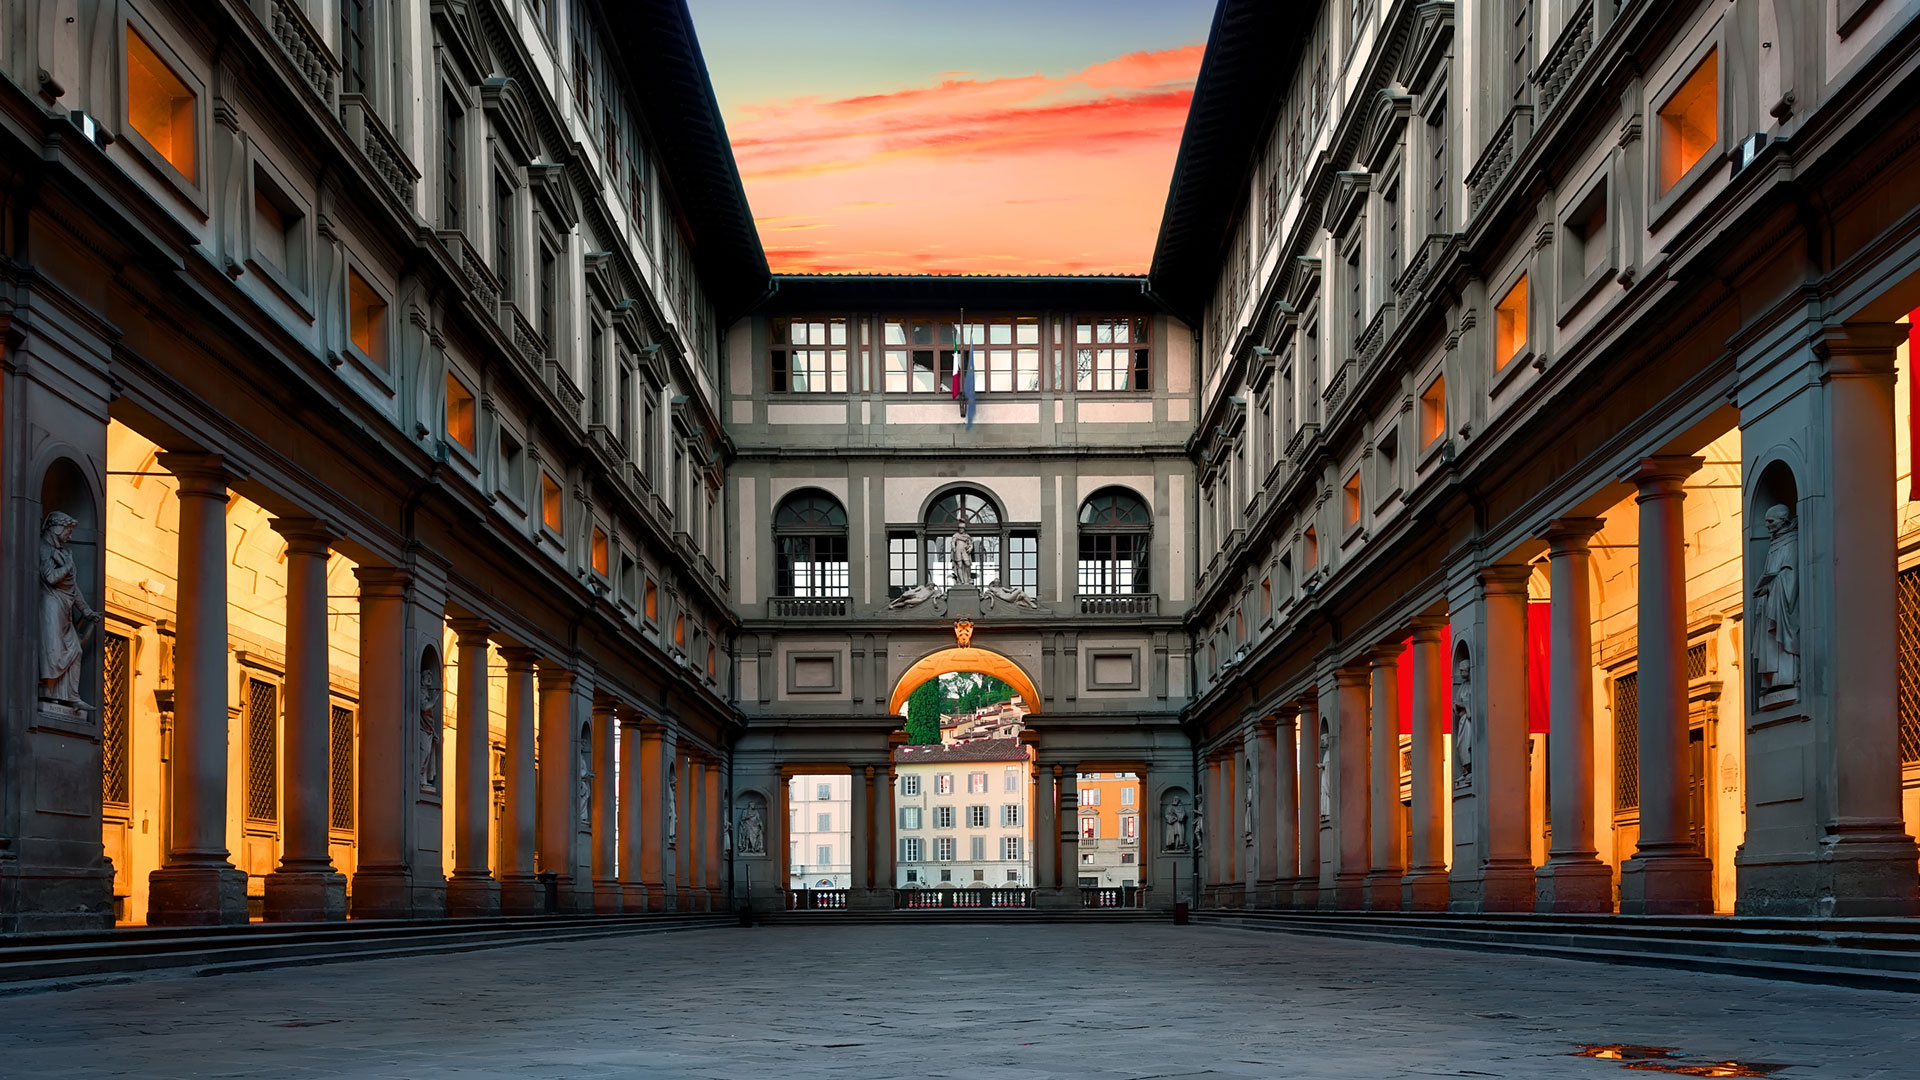 Galería Uffizi